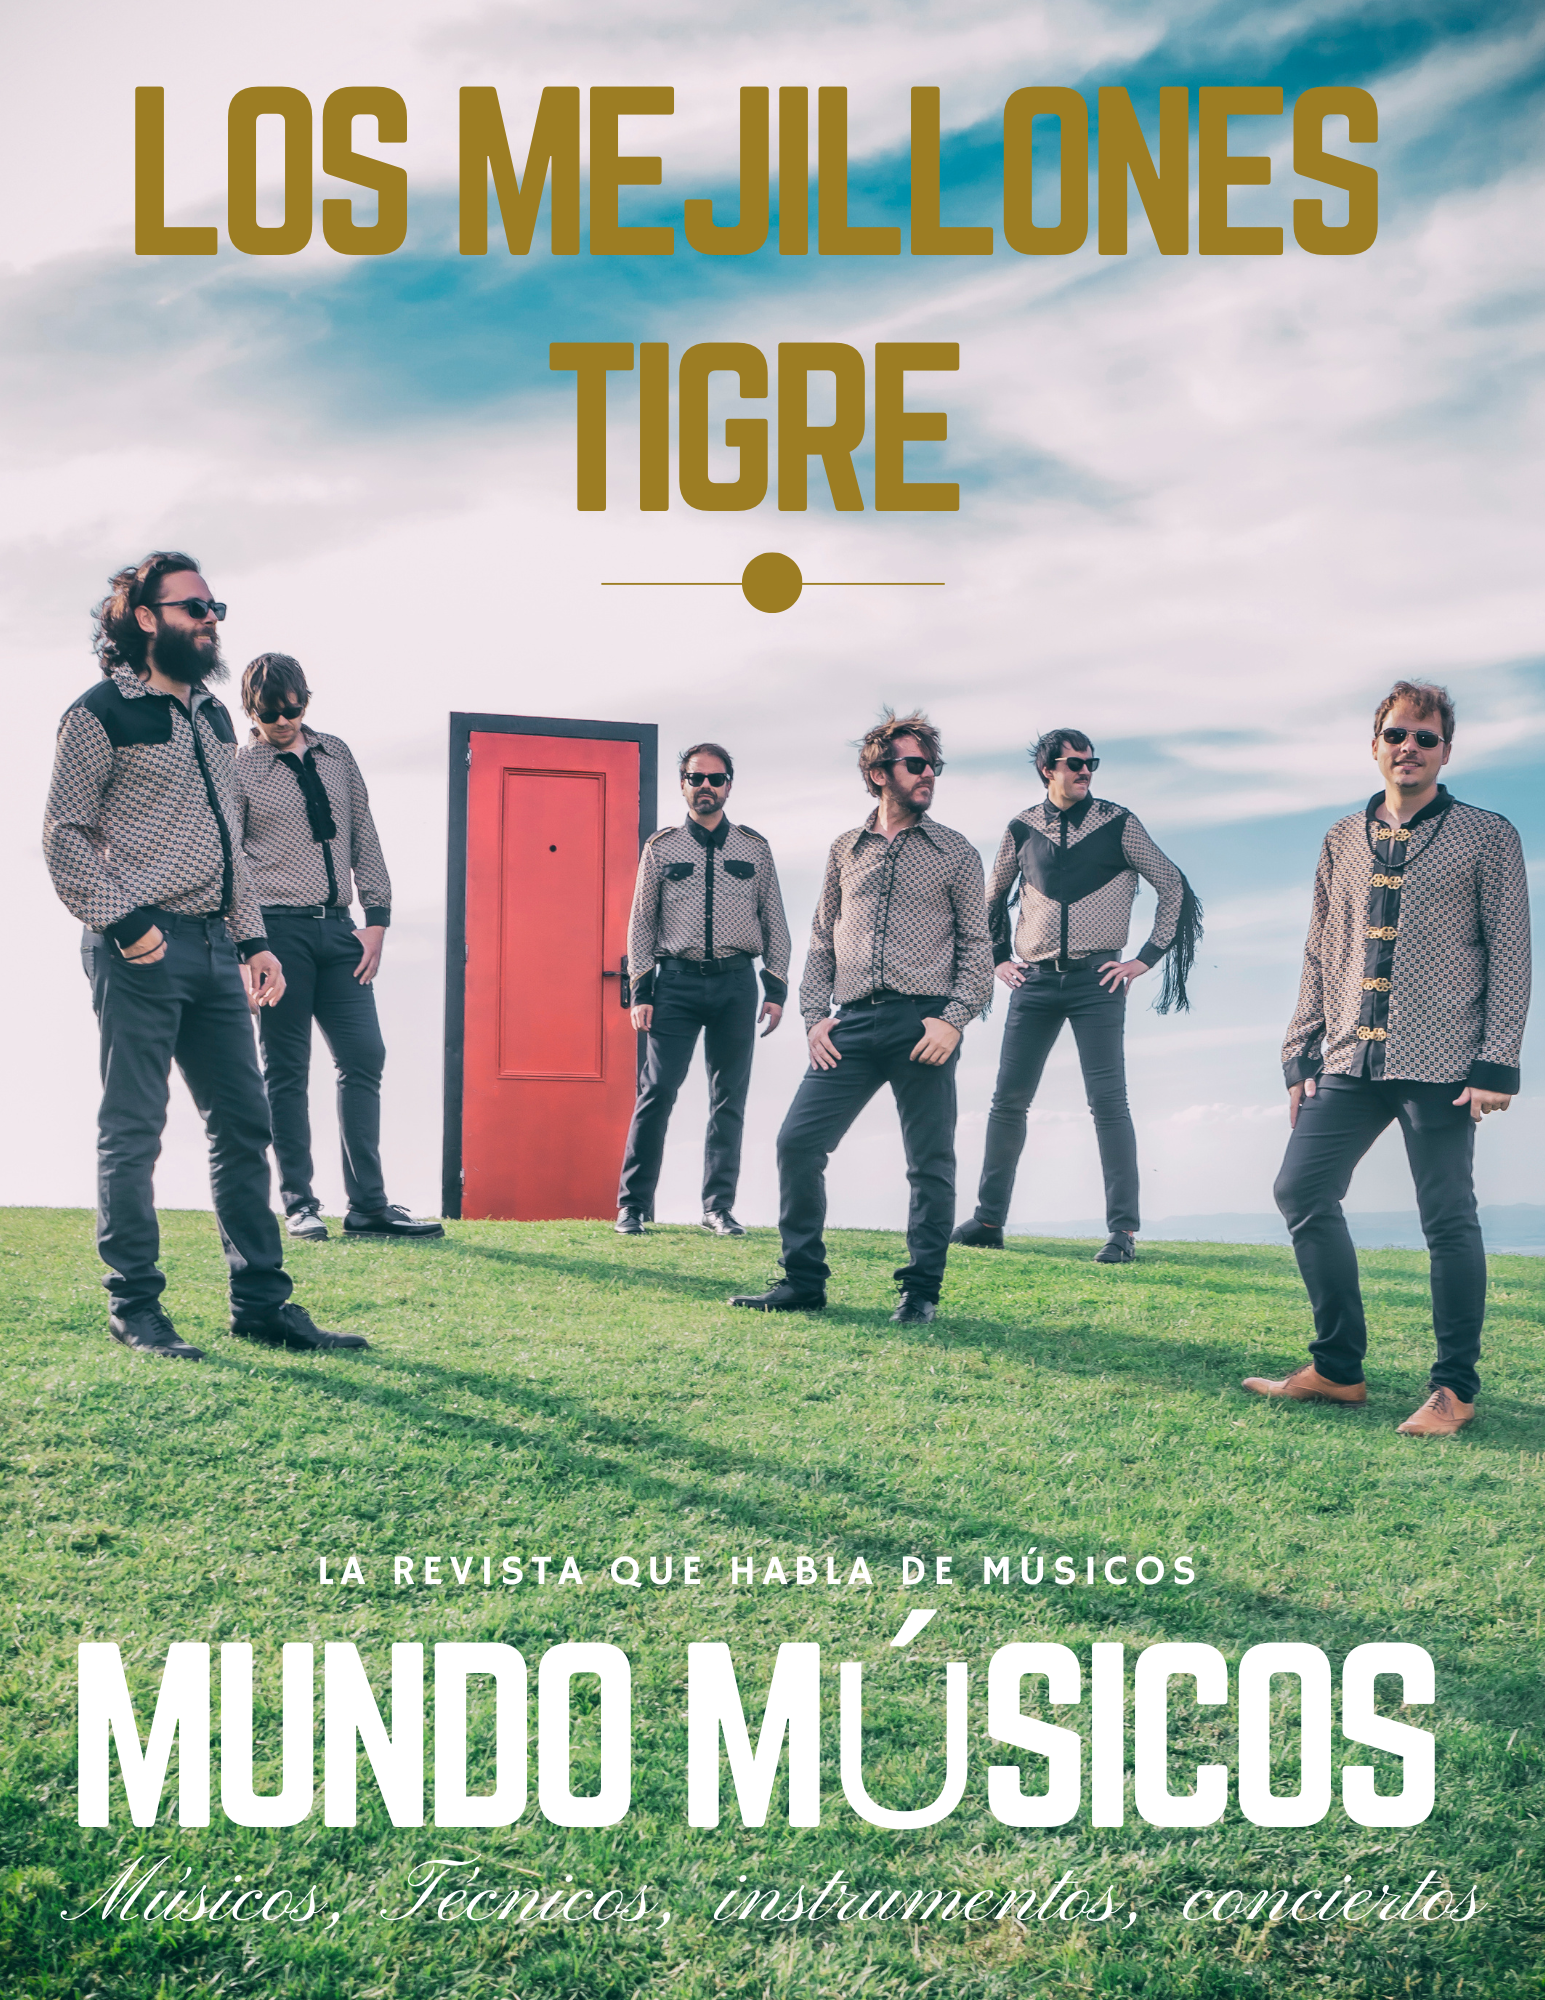 Los Mejillones Tigre «La música es nuestra pasión»